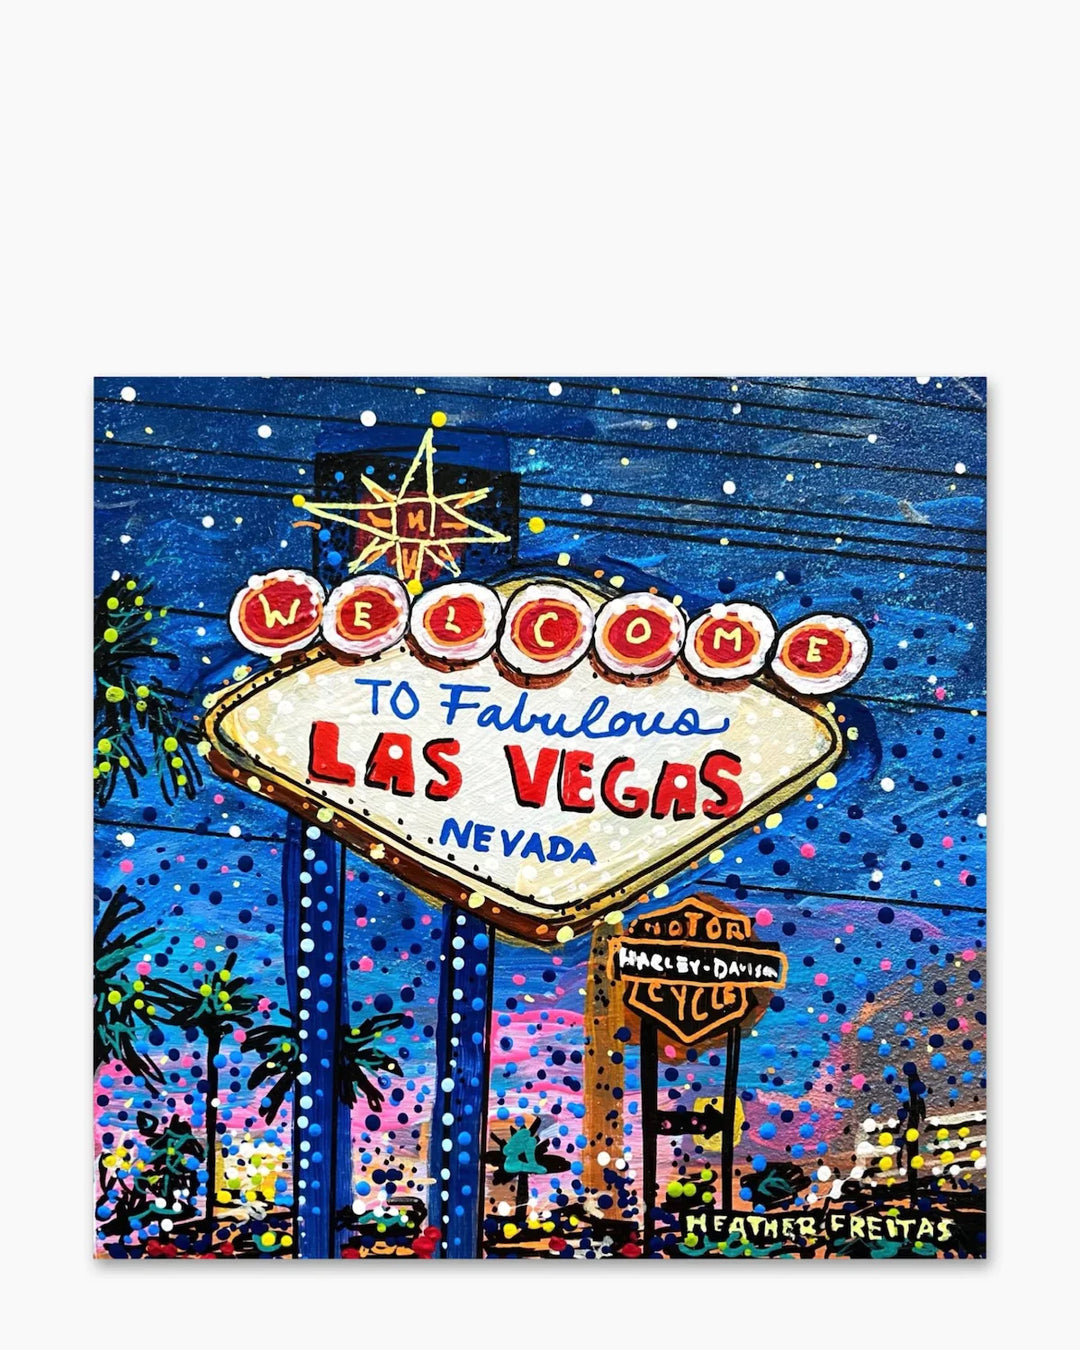 Fabulous Las Vegas - Heather Freitas 